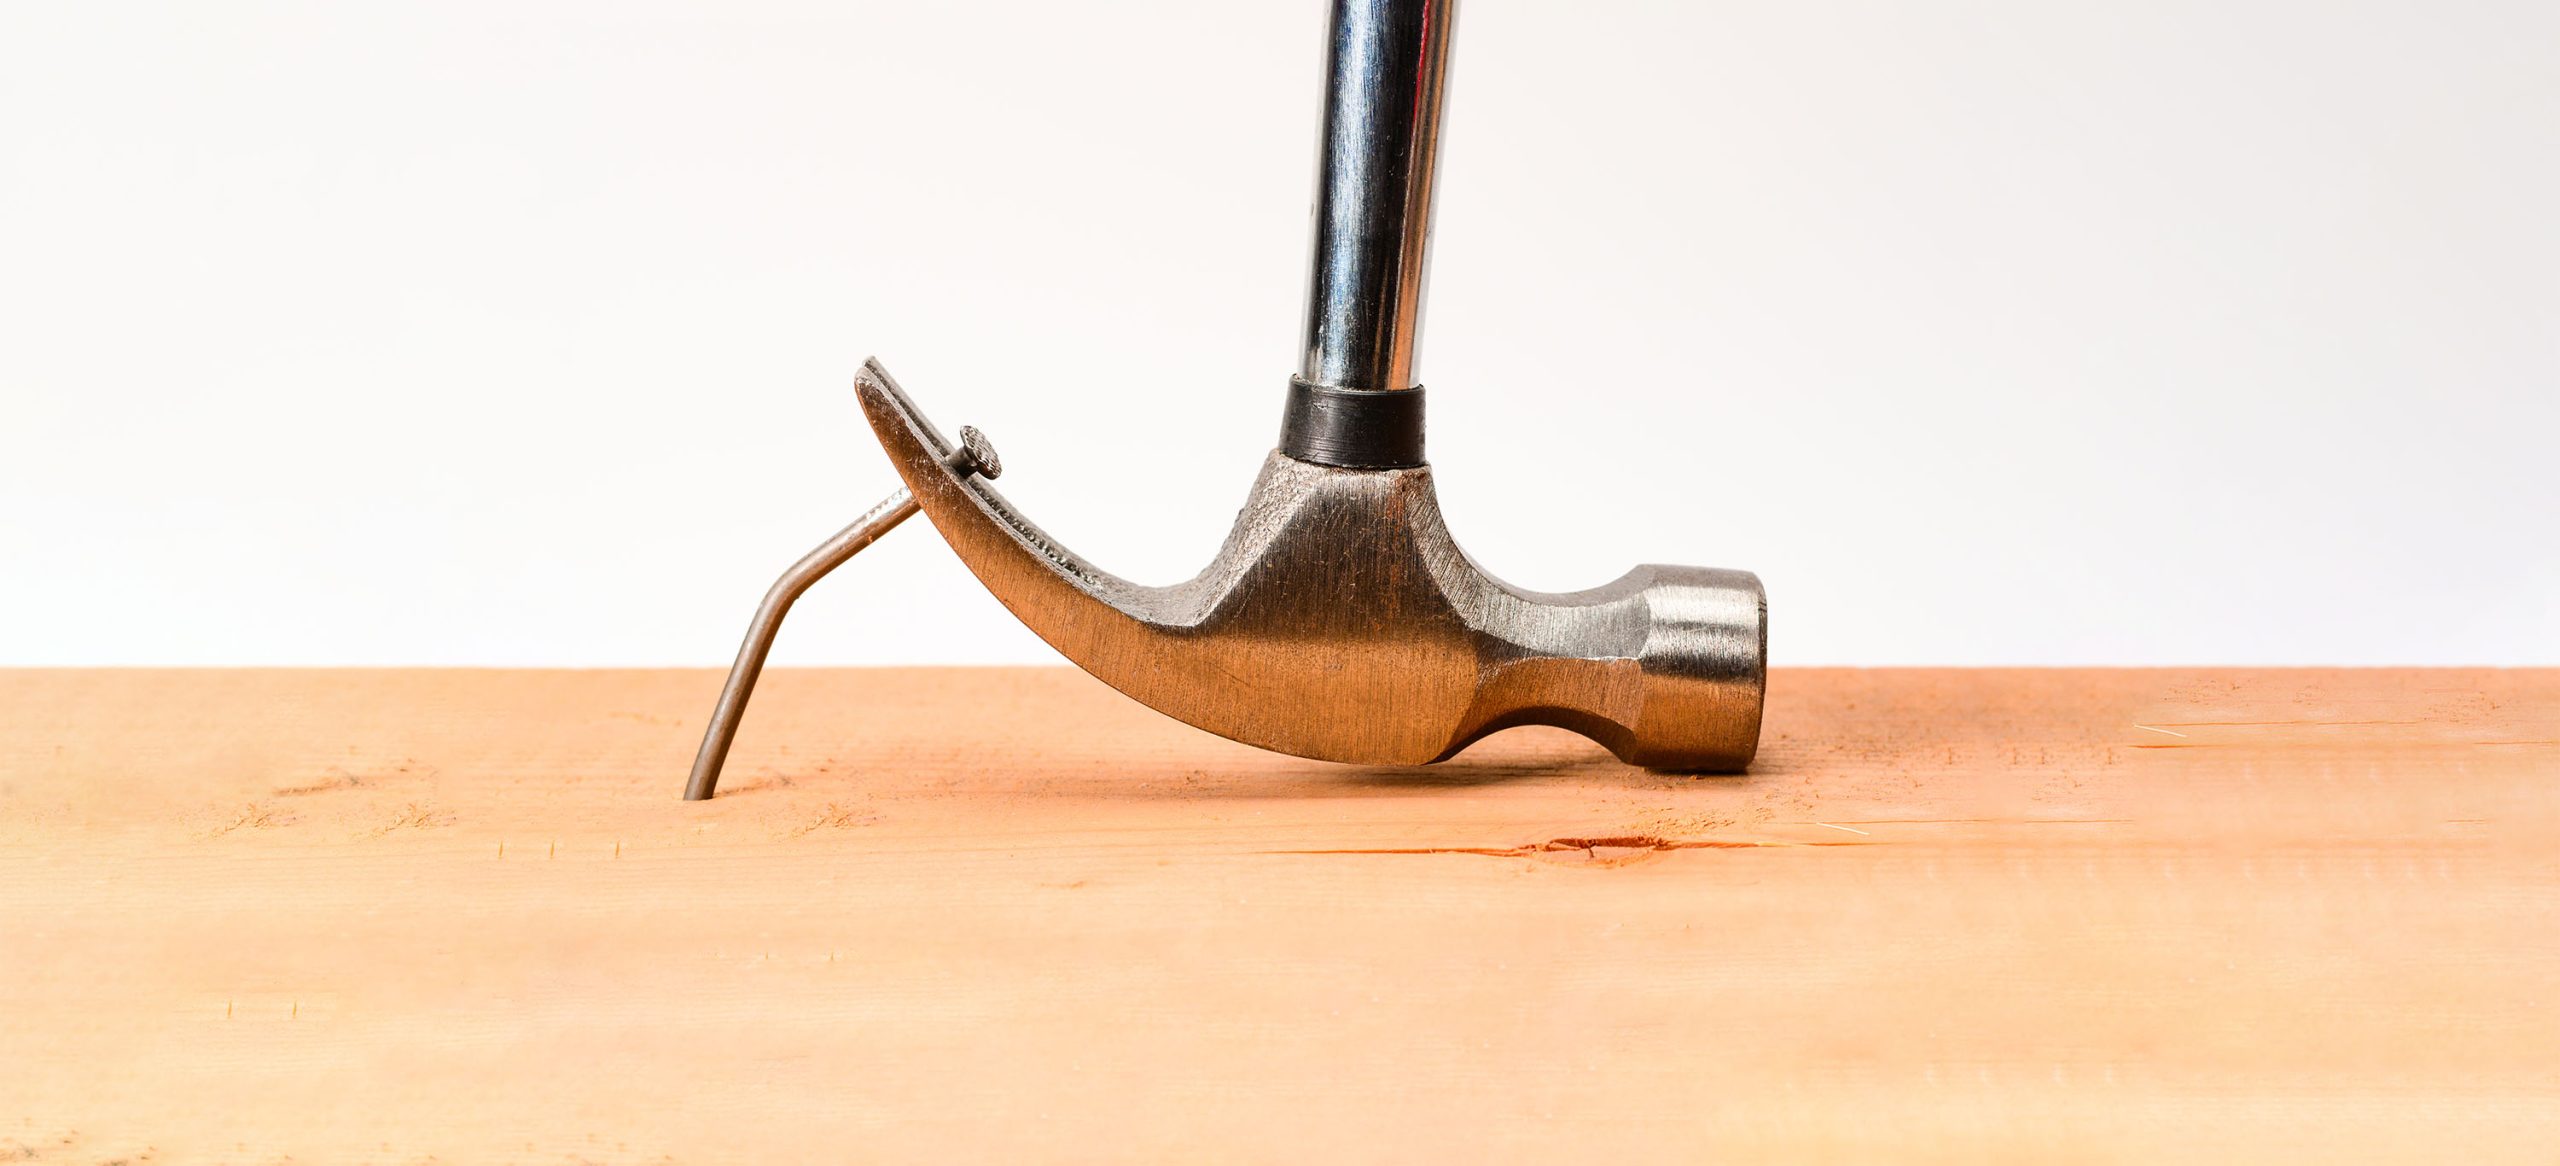 Hammer pulling bent nail